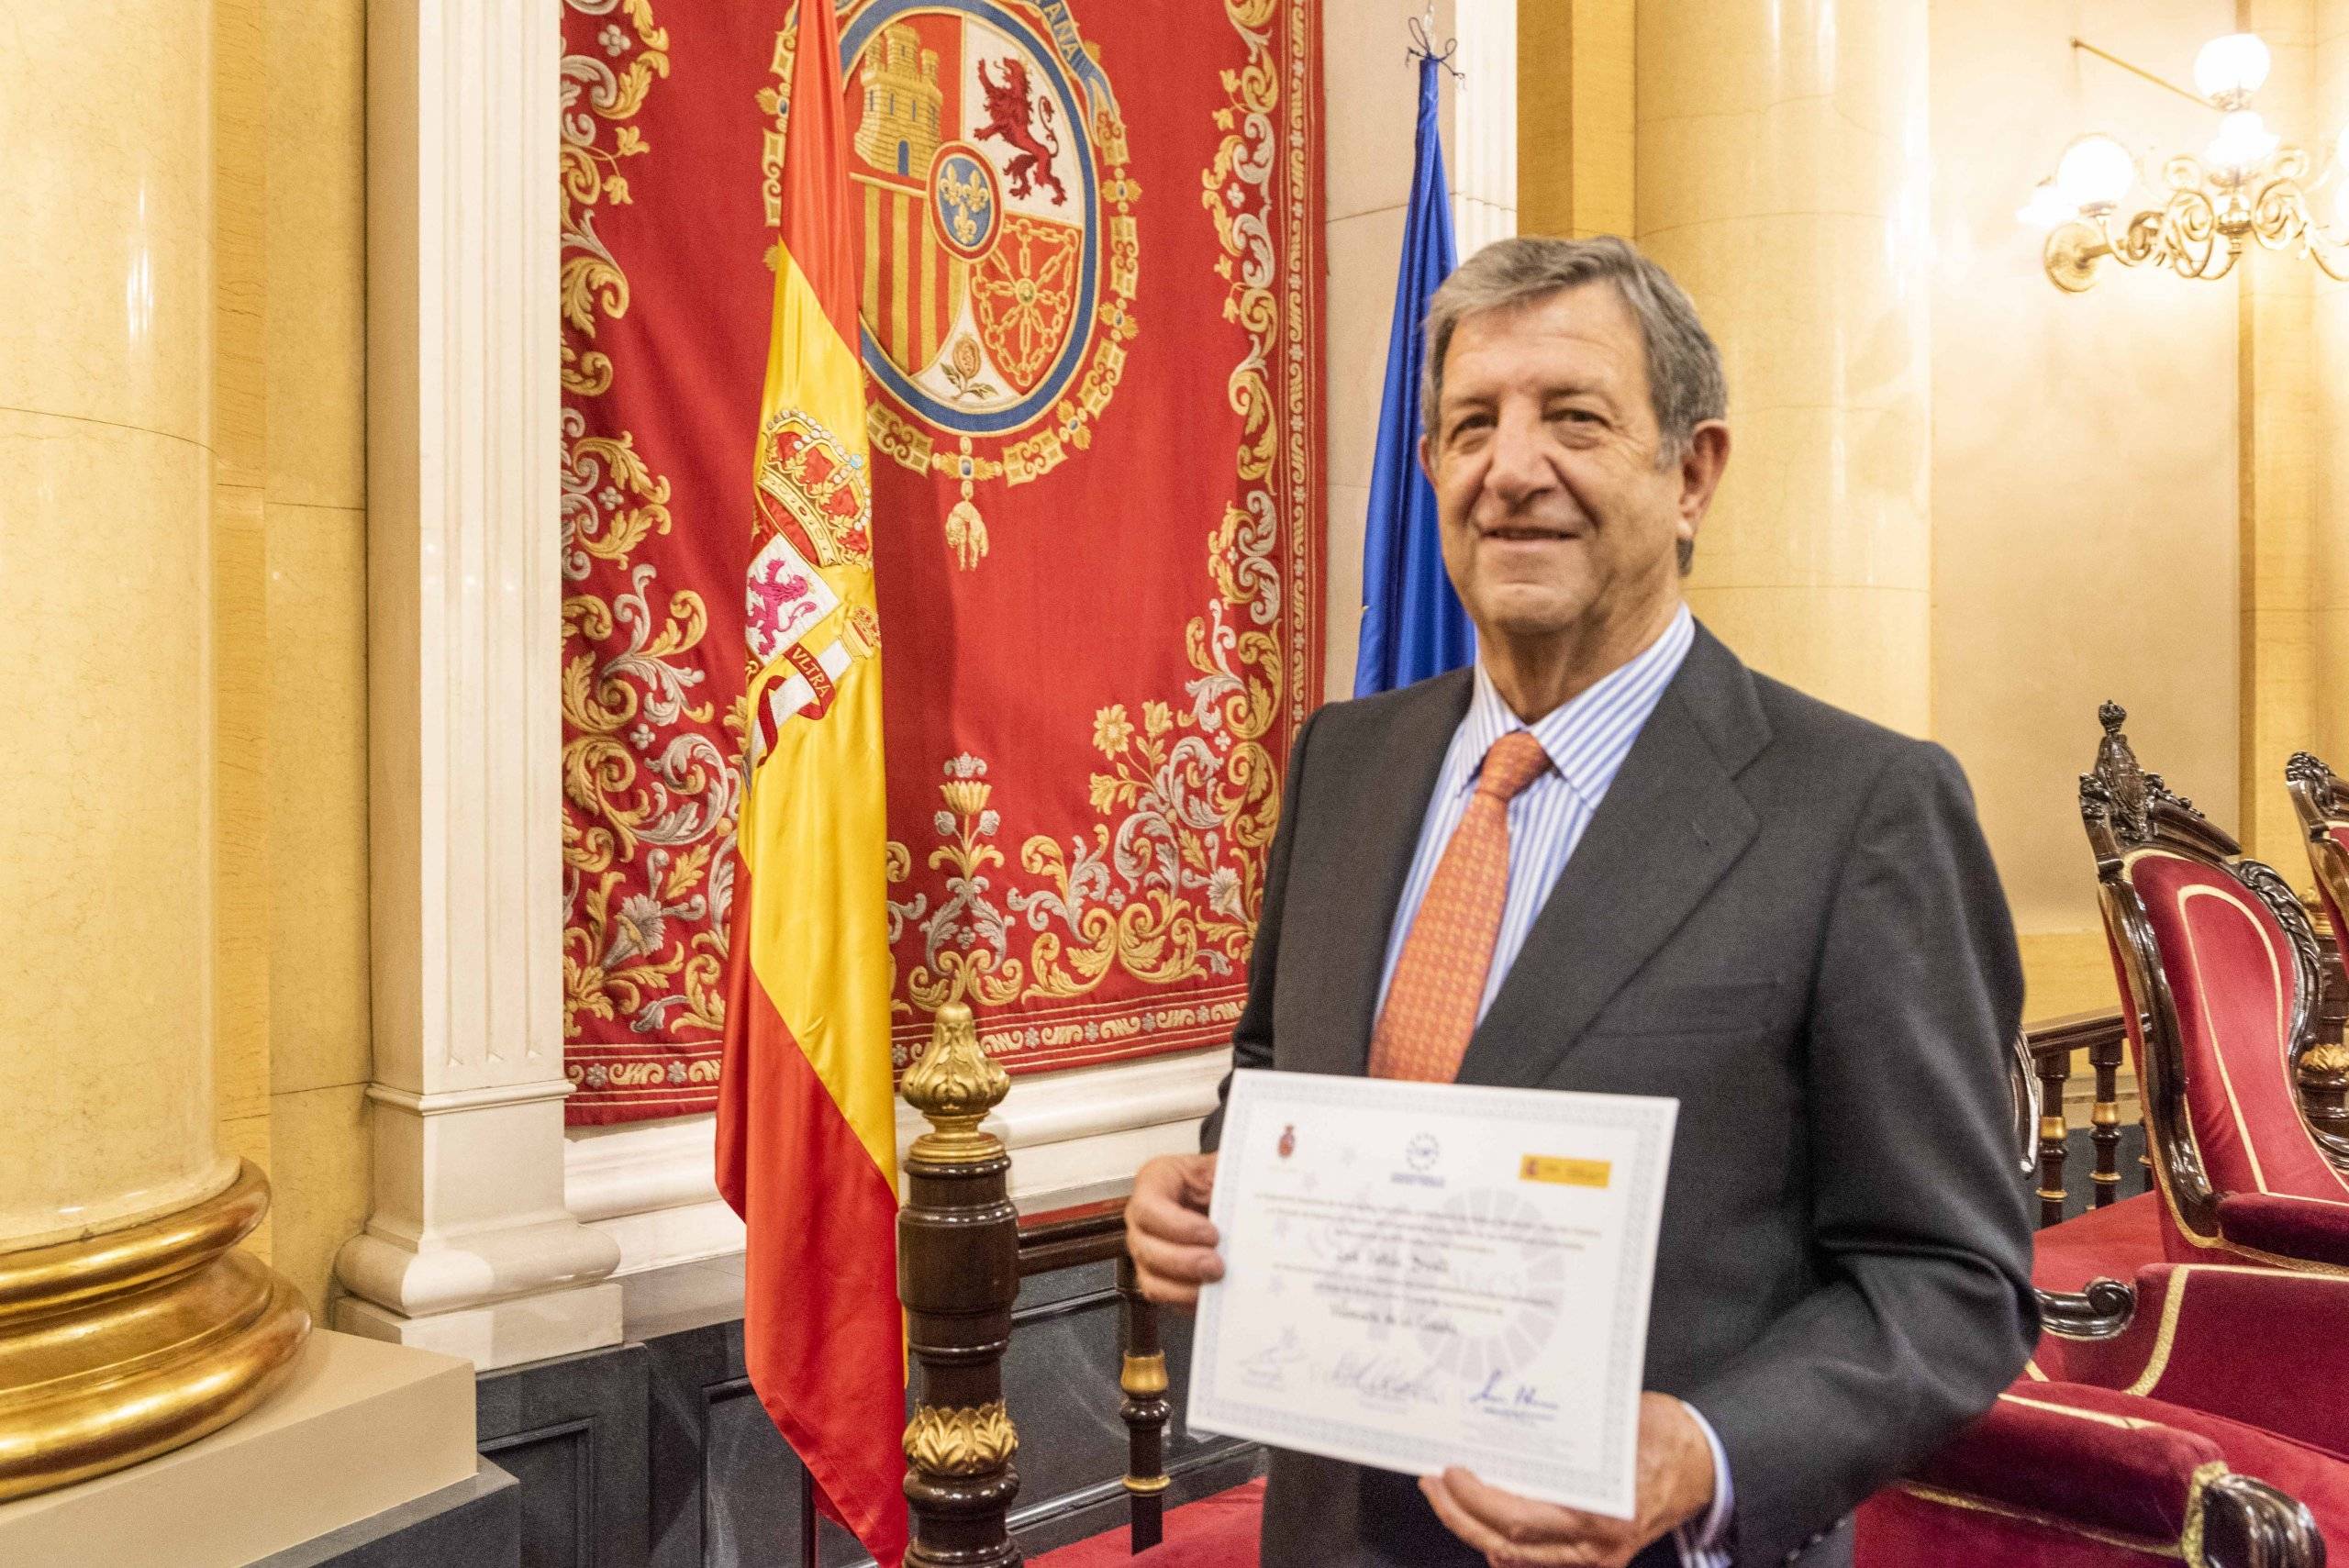 El alcalde, Luis Partida, con el galardón de la FEMP recibido en el Senado.